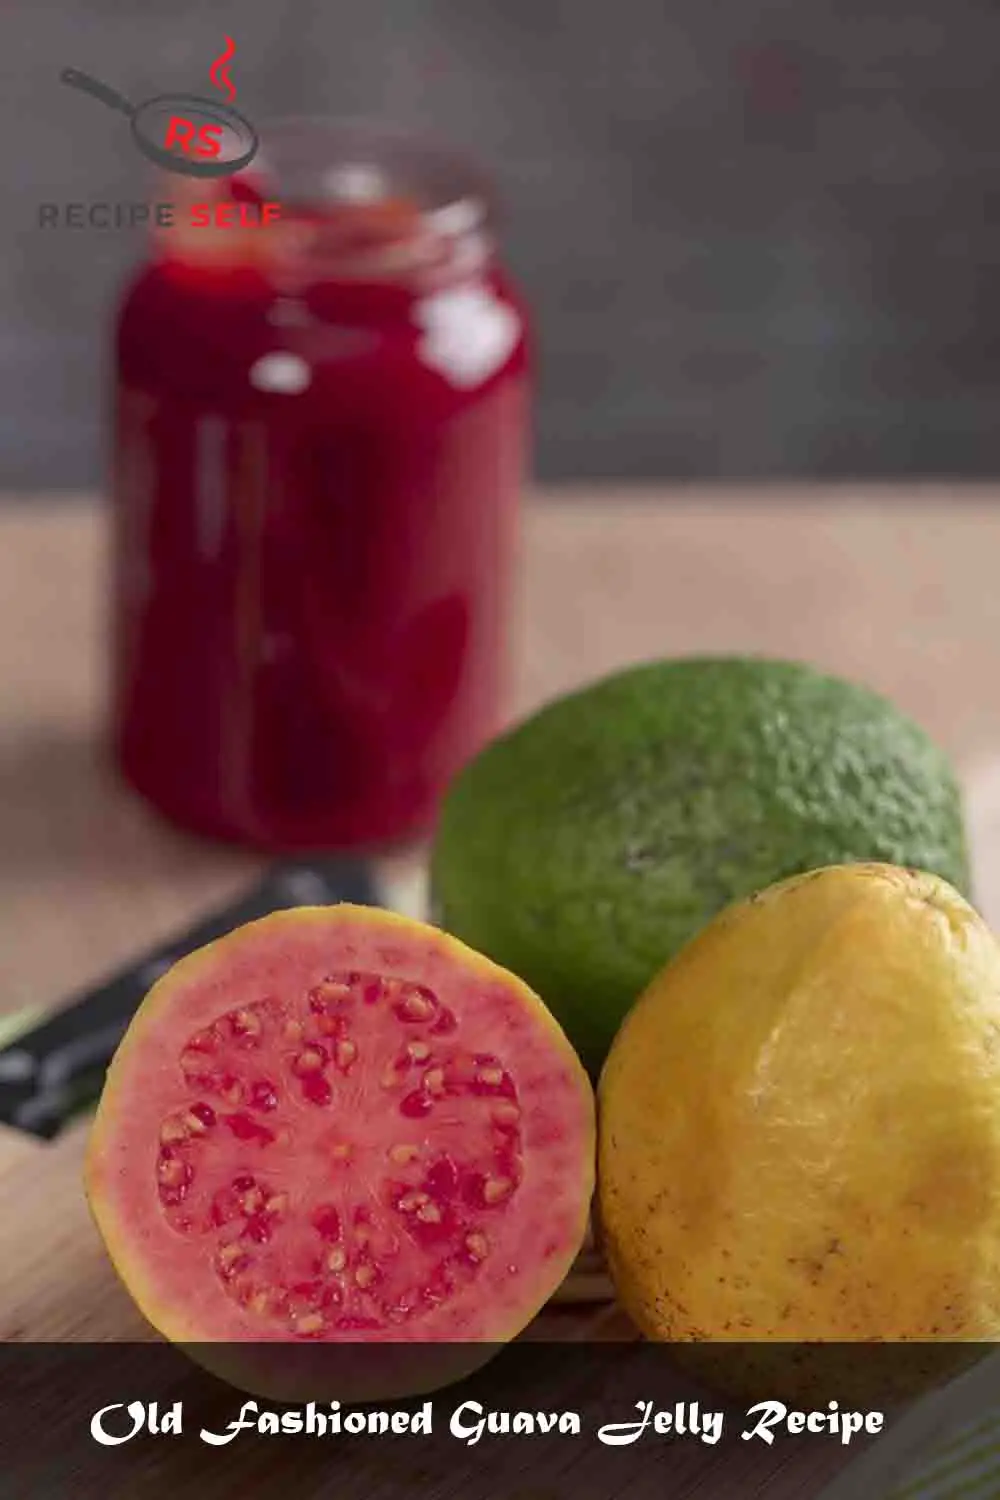 Old Fashioned Guava Jelly Recipe